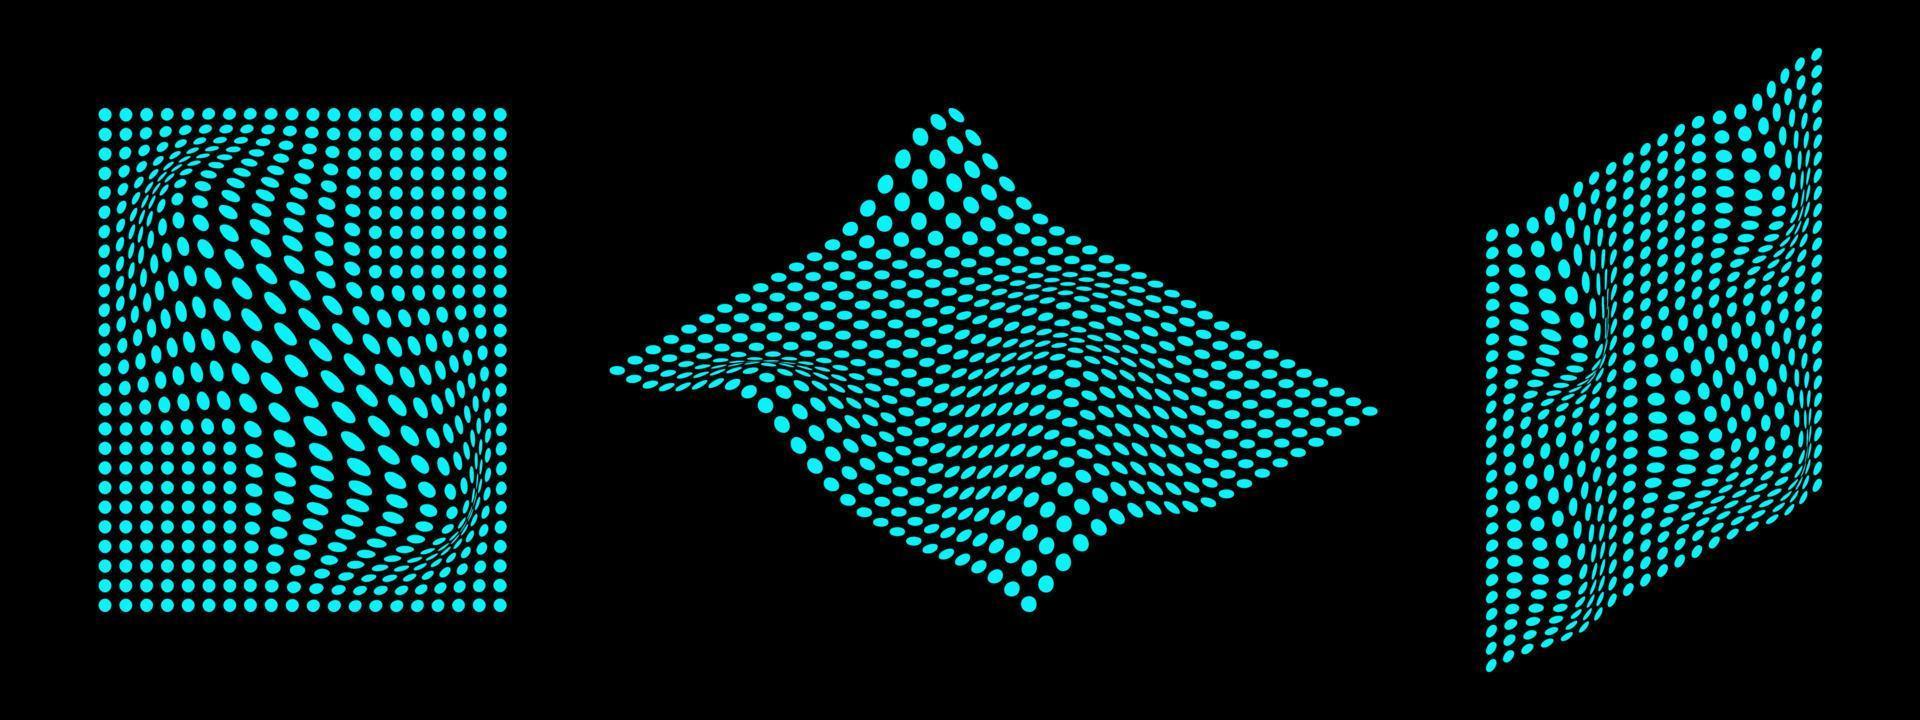 abstrakt neon cyber snedvridningar och konvex varp. trogen digital prickad former. vektor illustration av perspektiv objekt.